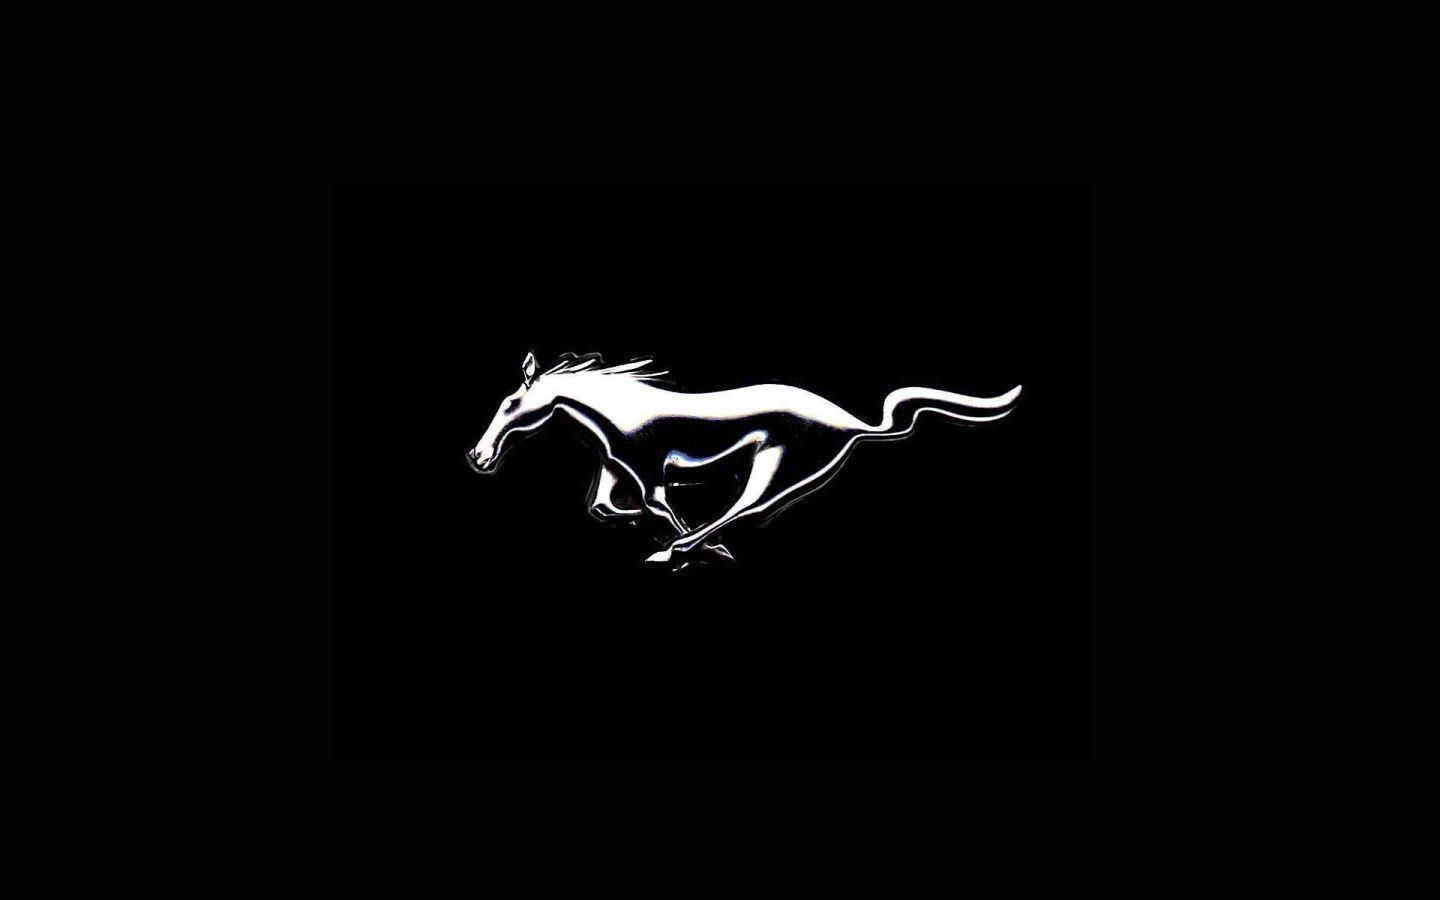 Hd Wallpaper Mustang Logo Wallpaper in Logos Imageci Com